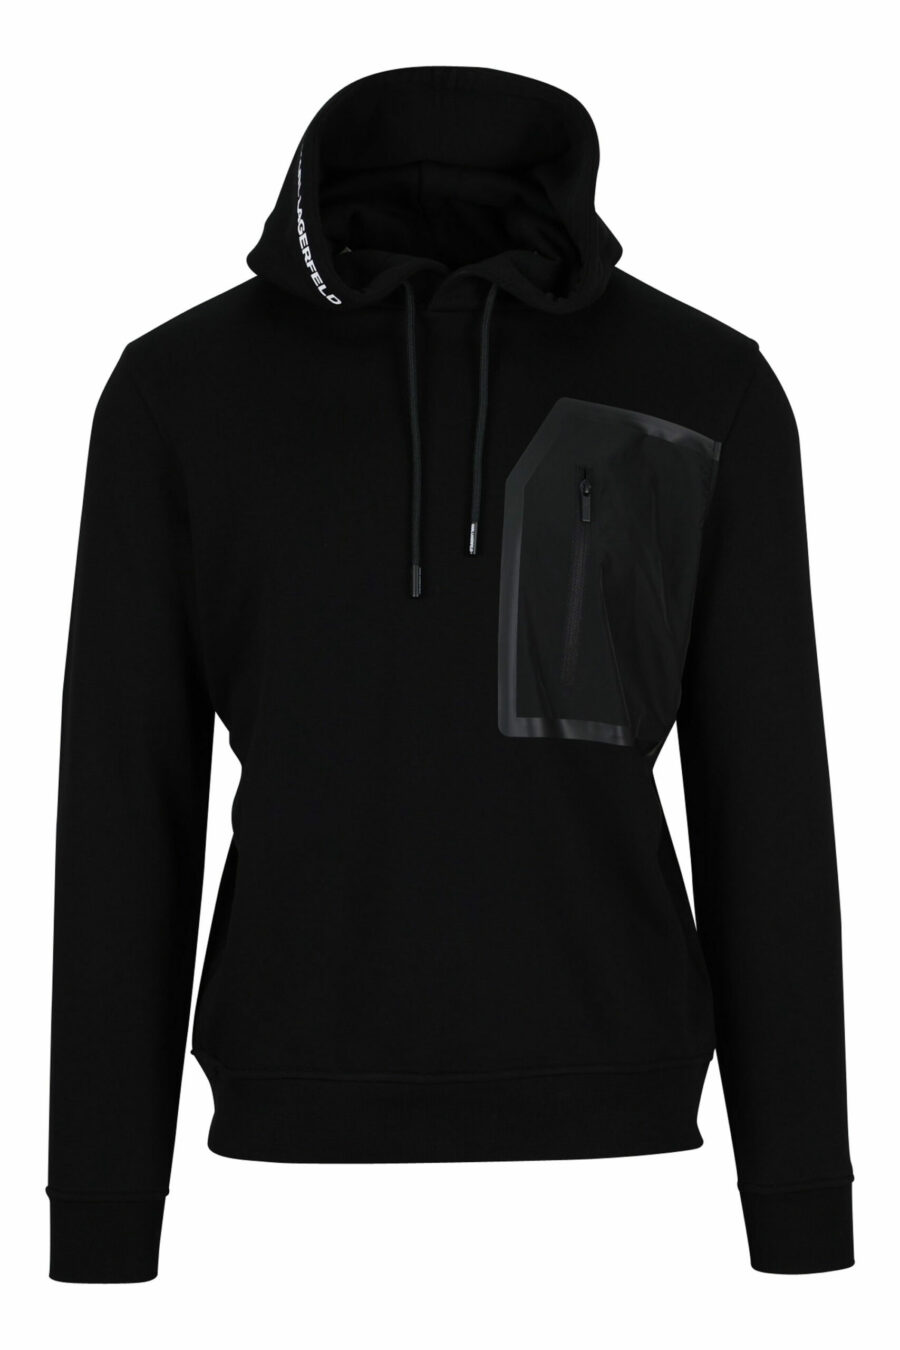 Sweatshirt noir avec capuche et pochette en nylon - 4062226389976